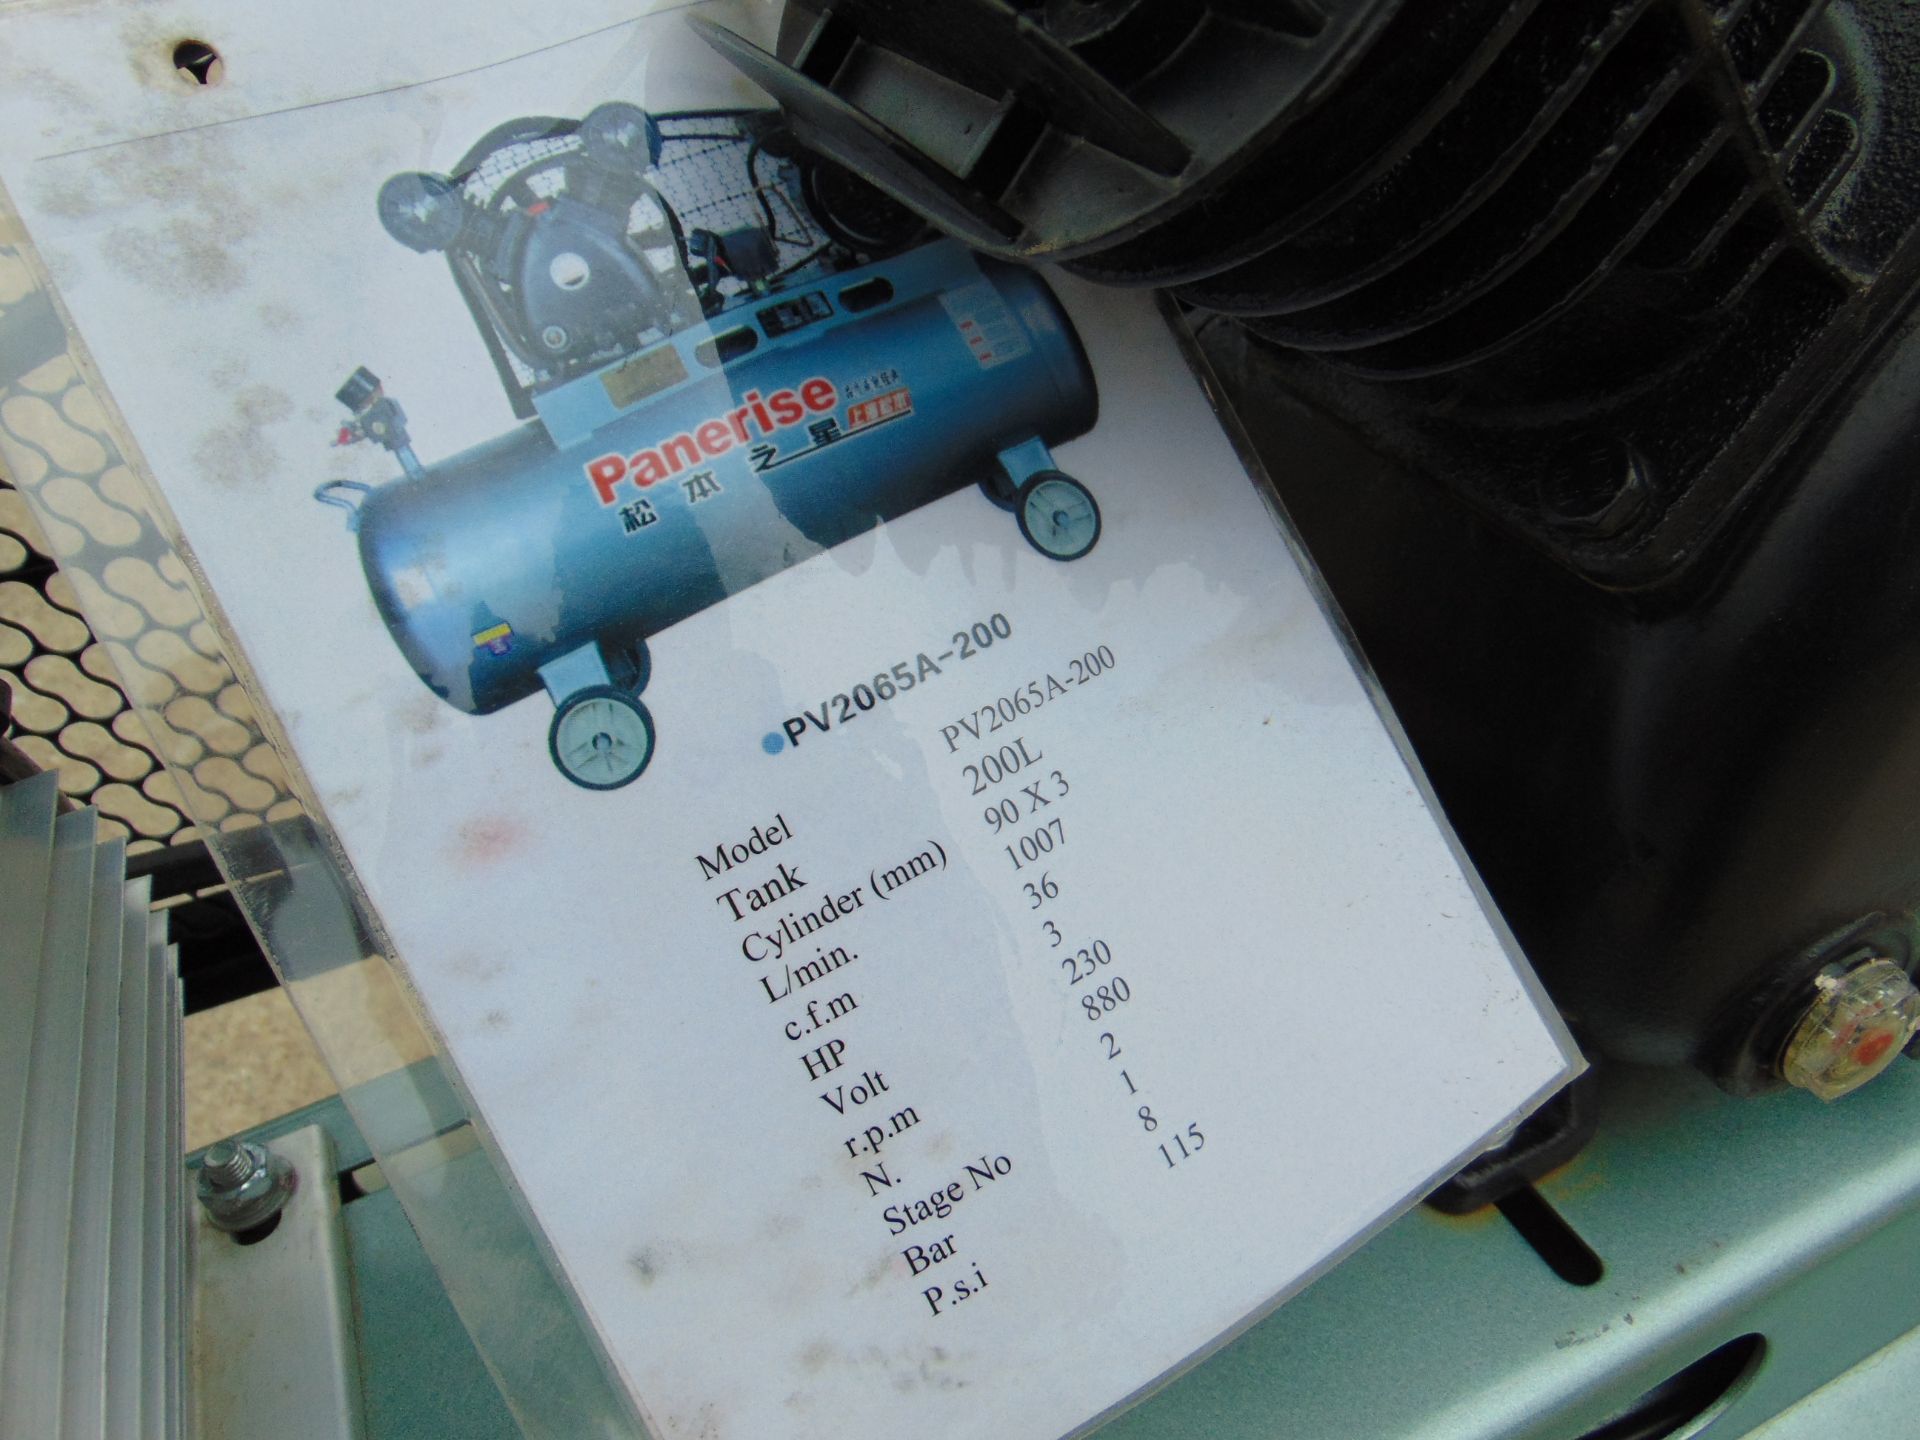 Unissued Panerise 300L workshop Air Compressor - Image 7 of 9